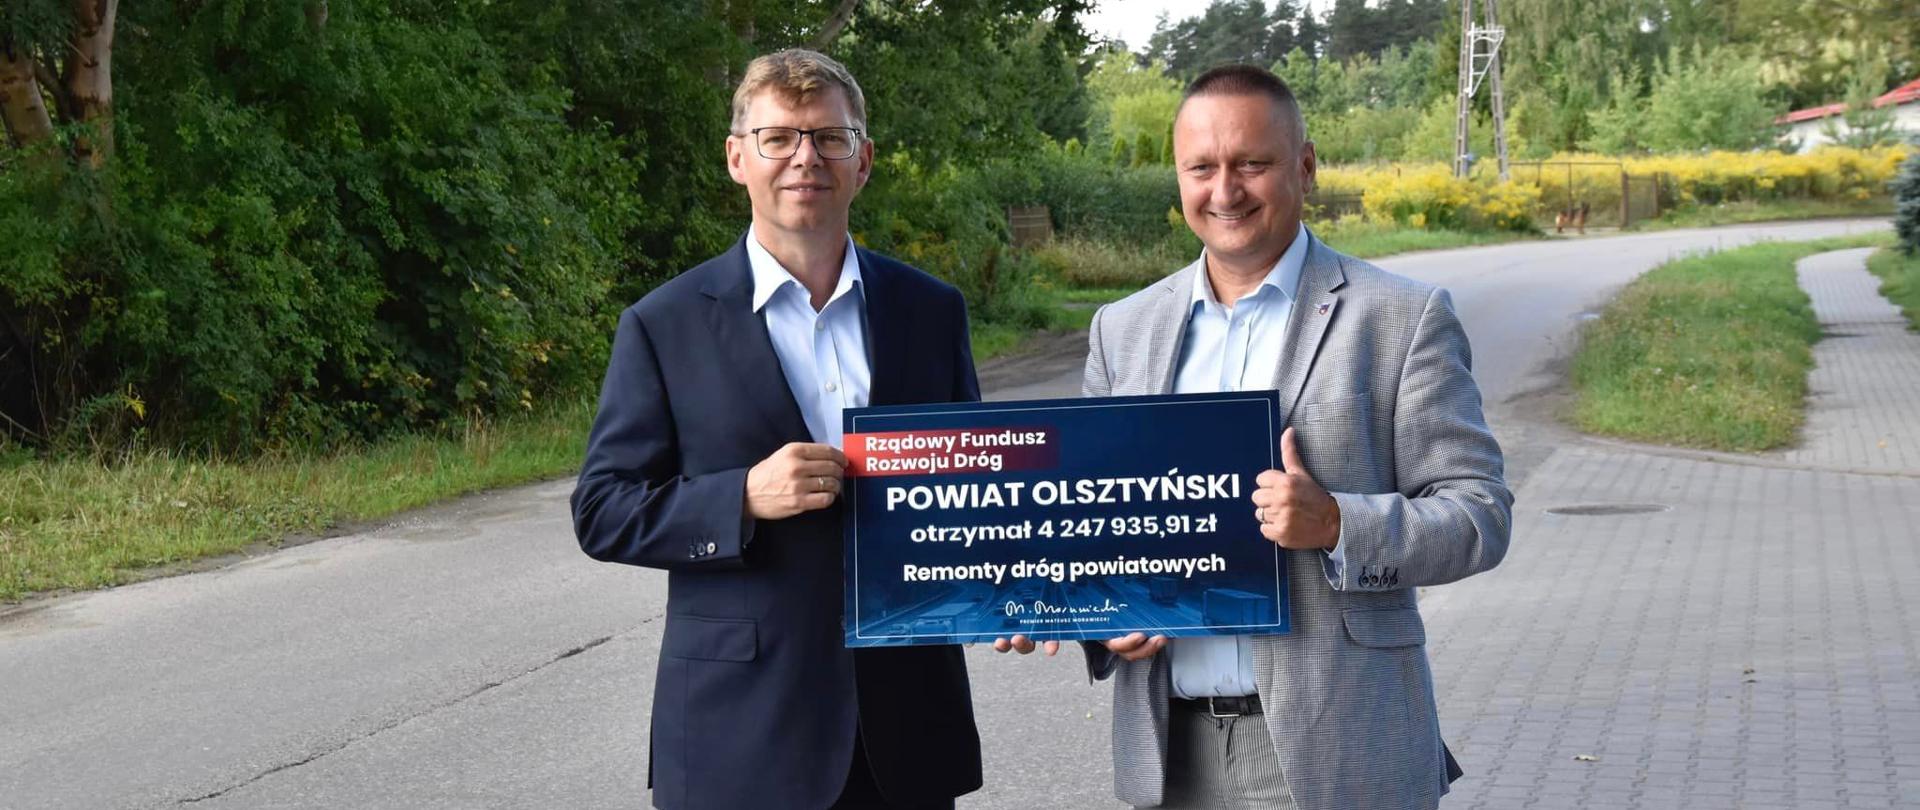 Ponad 4 mln zł na remonty dróg w powiecie olsztyńskim